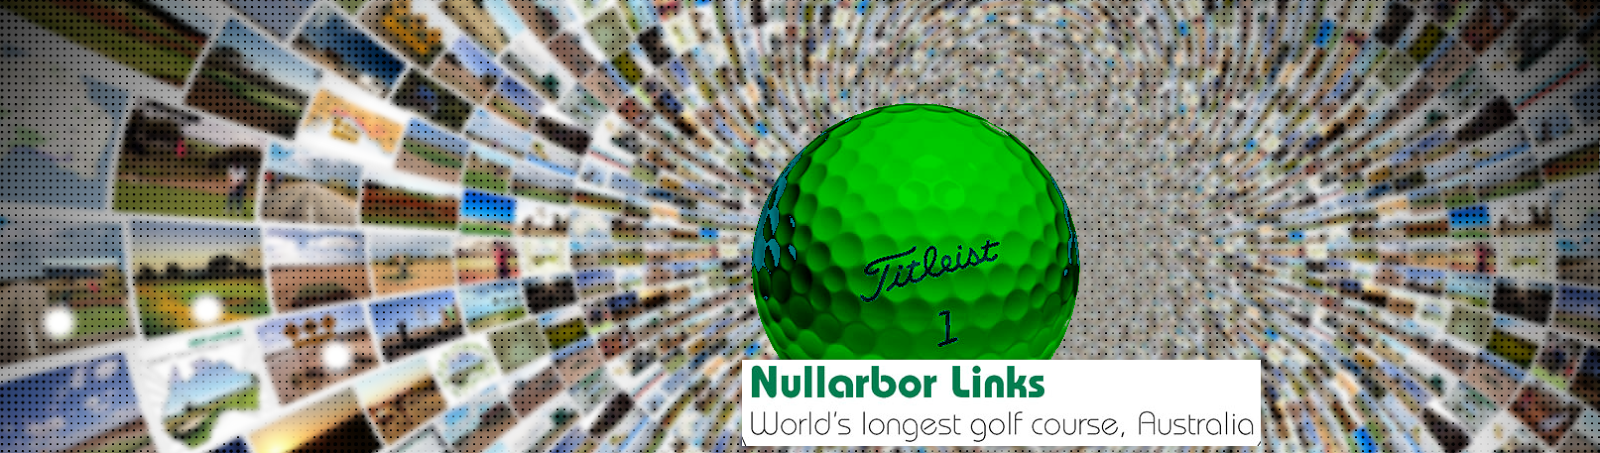 Nullarbor Links världens längsta golfbana